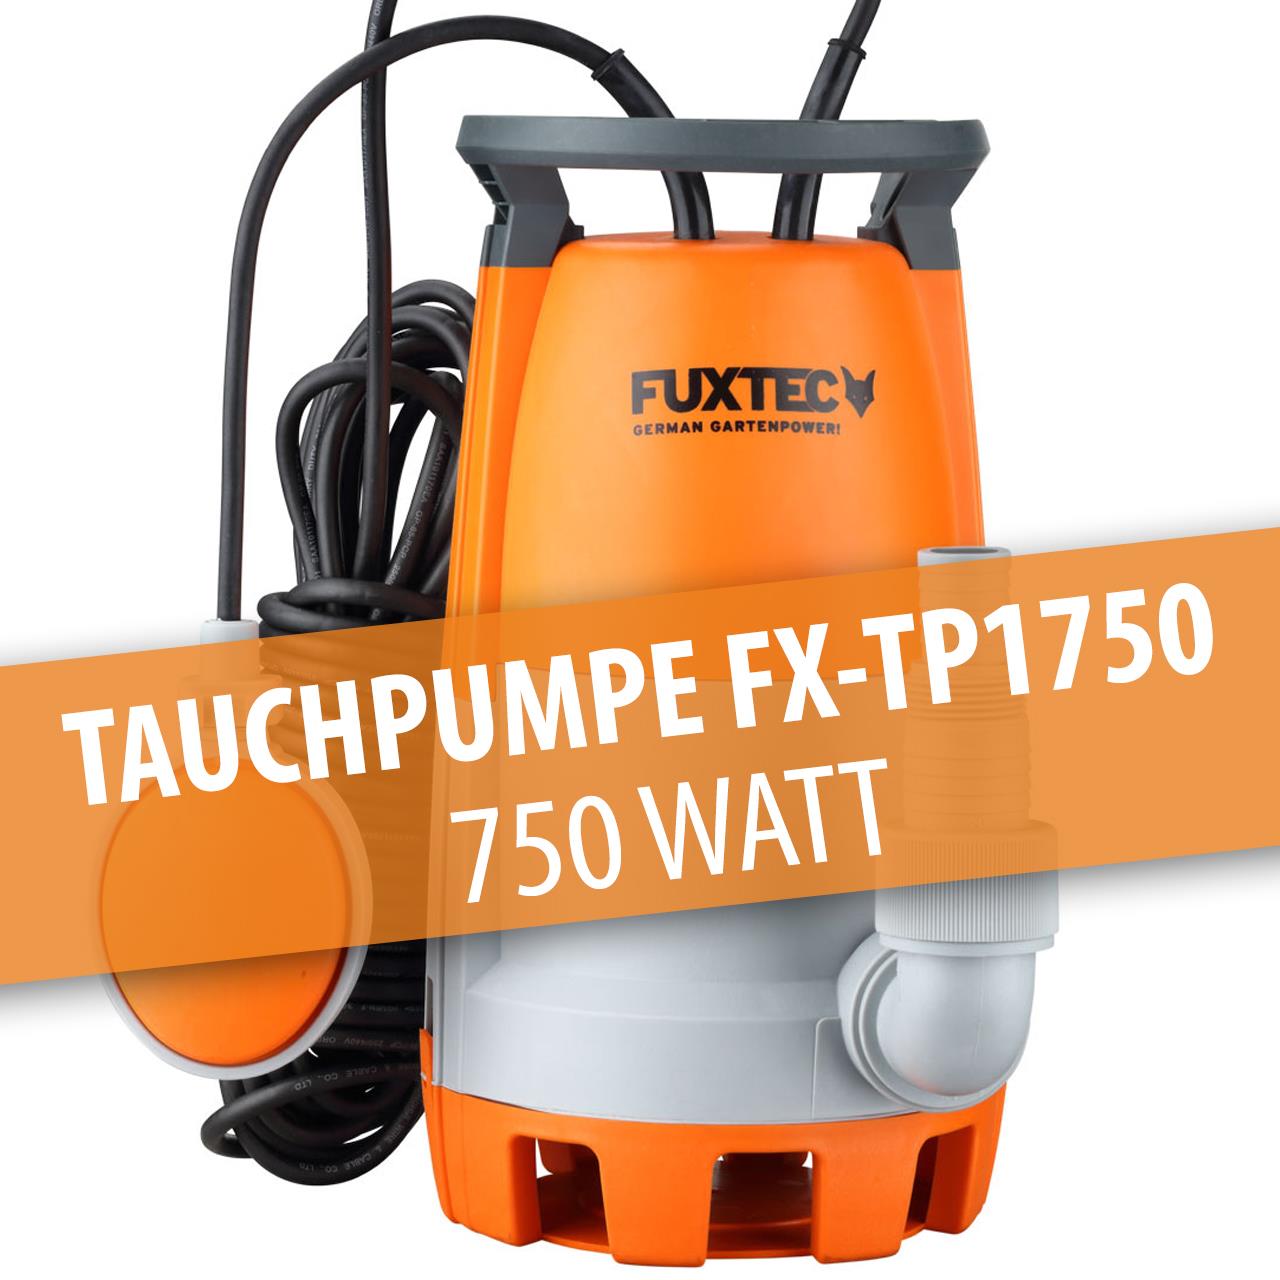 B-Ware FUXTEC Tauchpumpe FX-TP1750 - 750 Watt